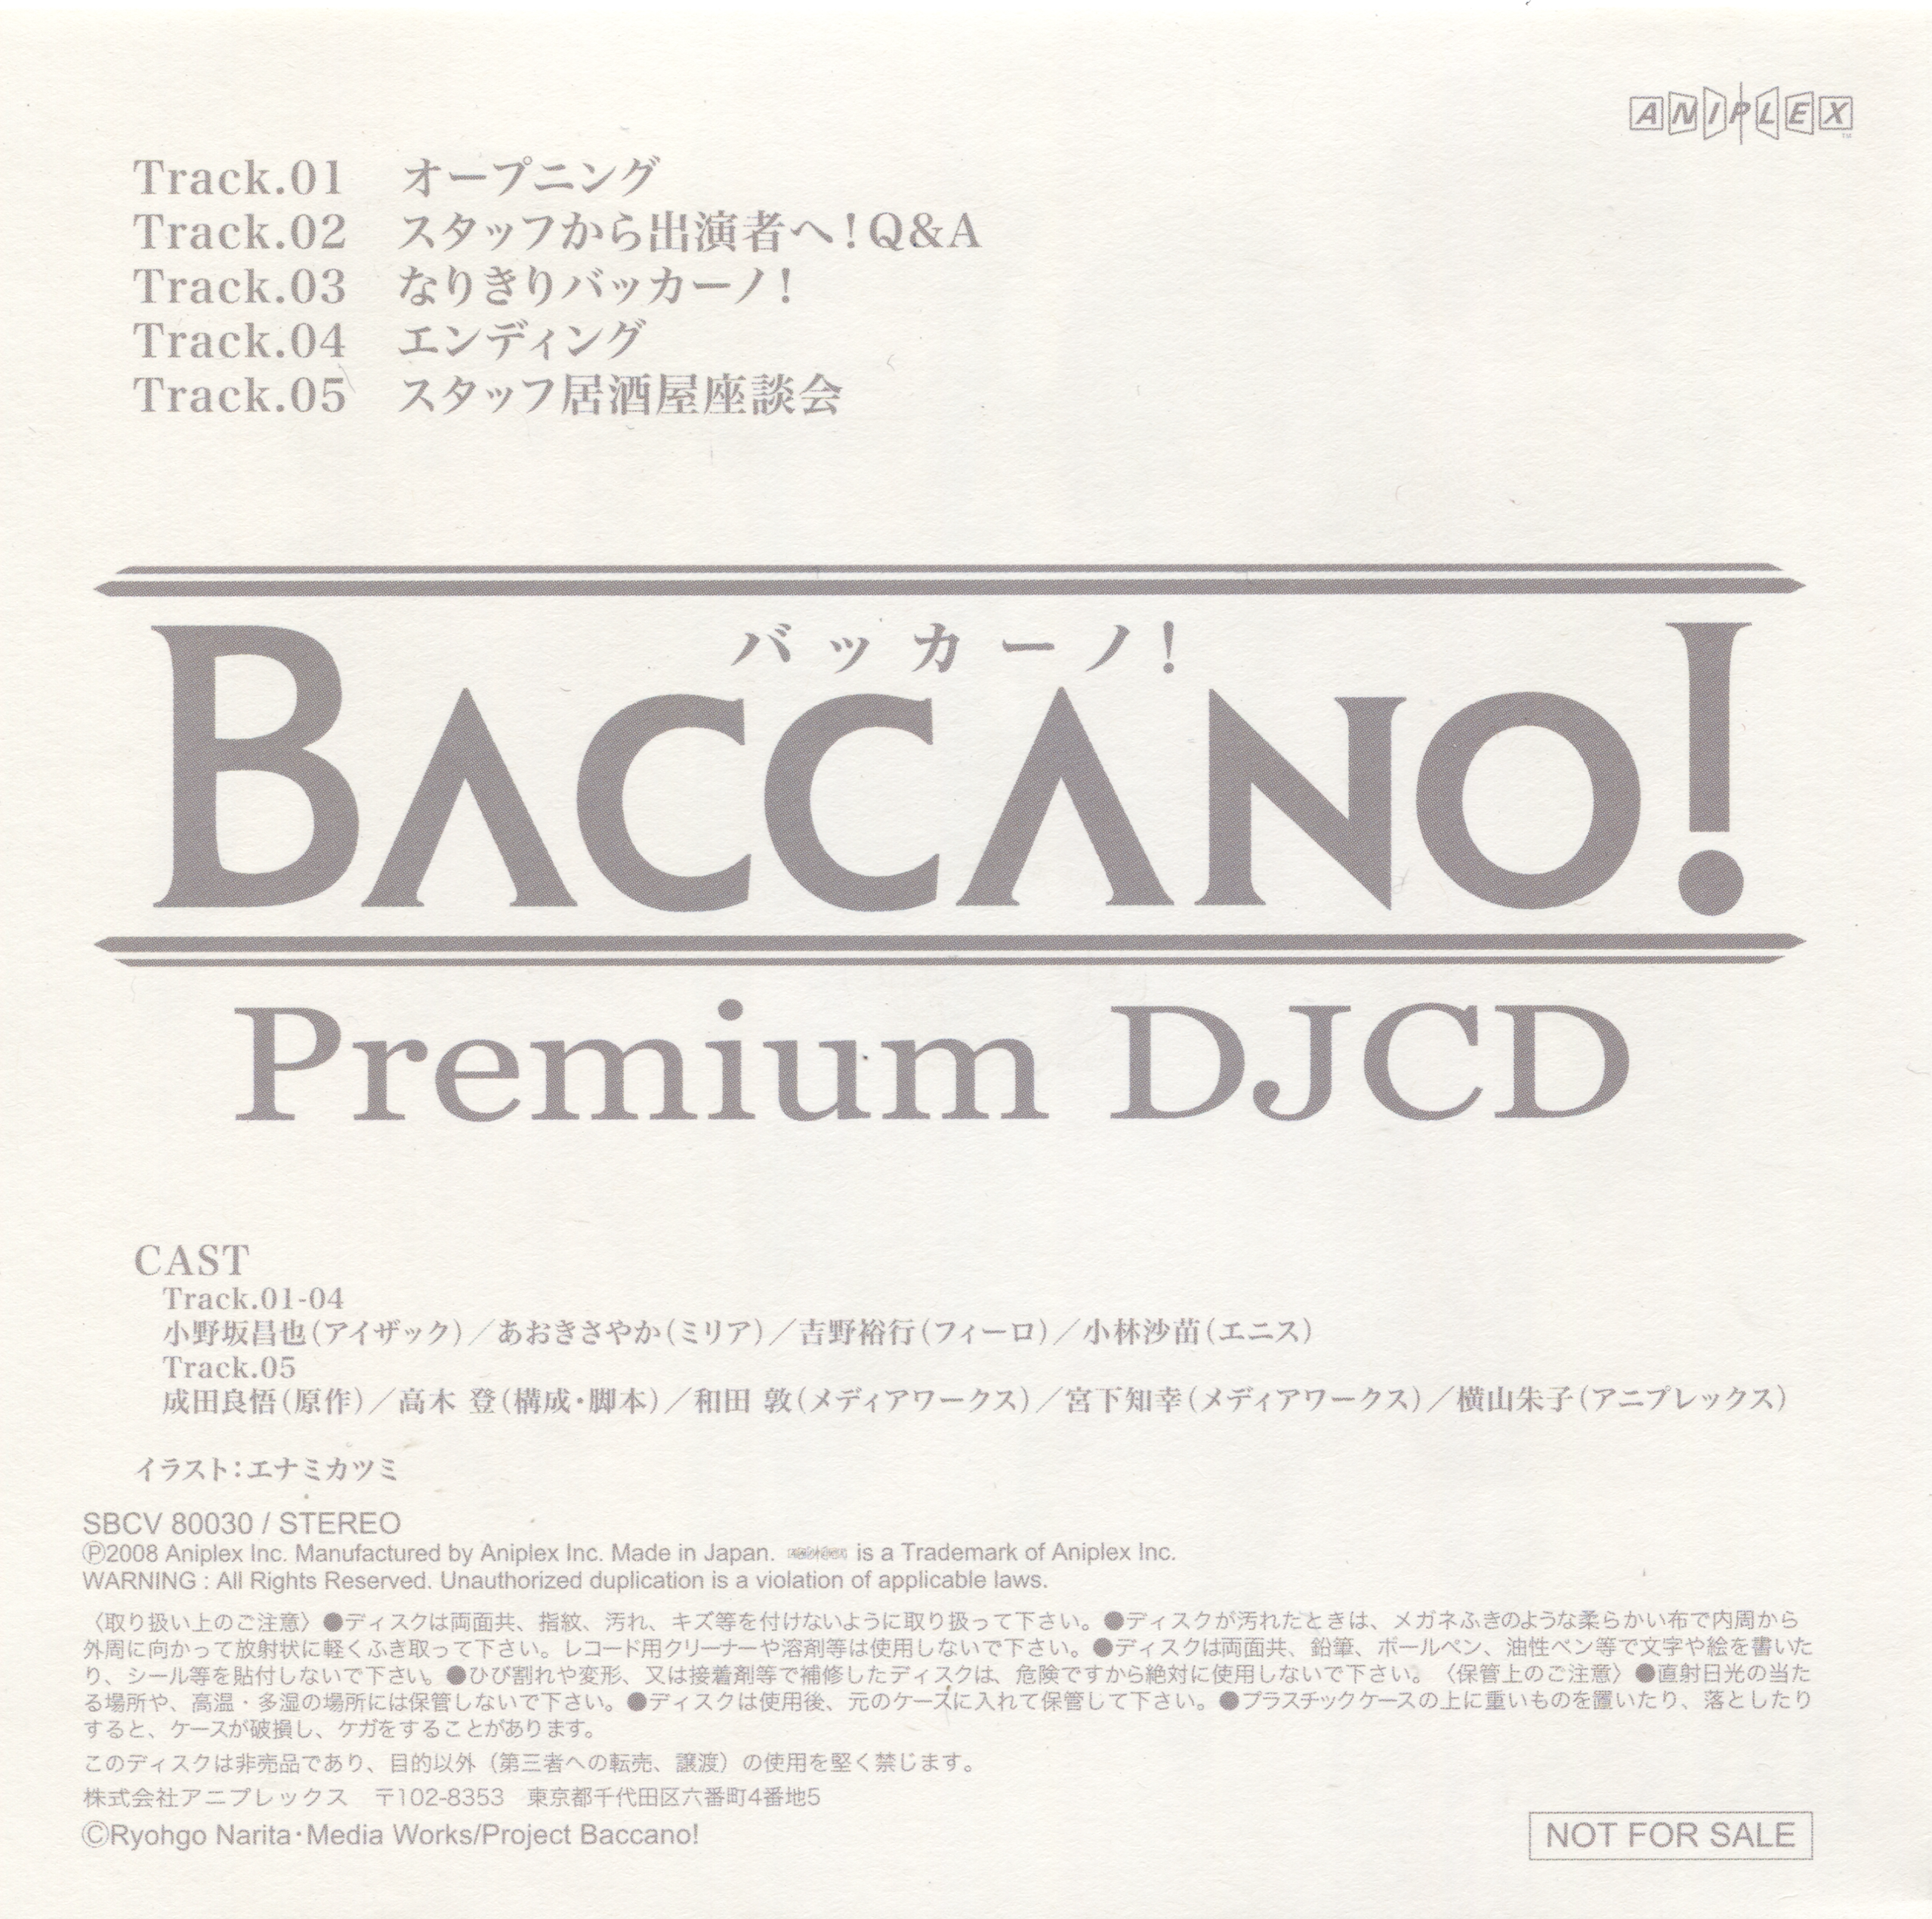 Baccano Premium Djcd Baccano Wiki Fandom